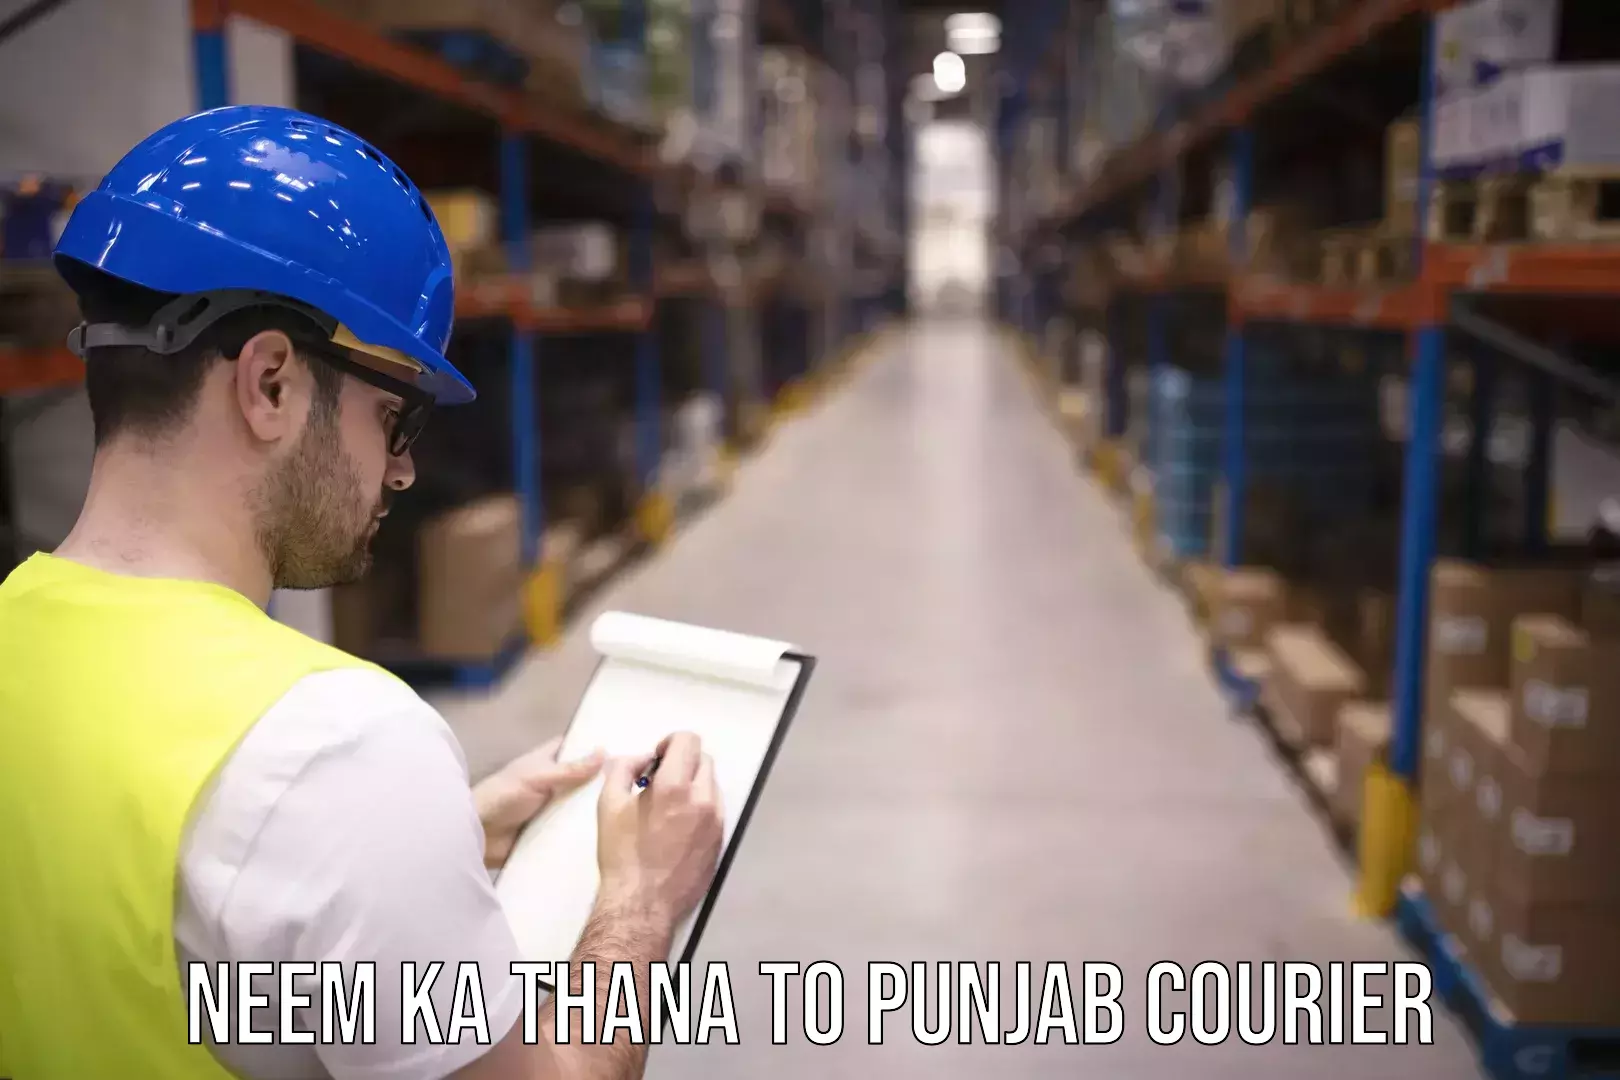 Courier dispatch services Neem ka Thana to Punjab